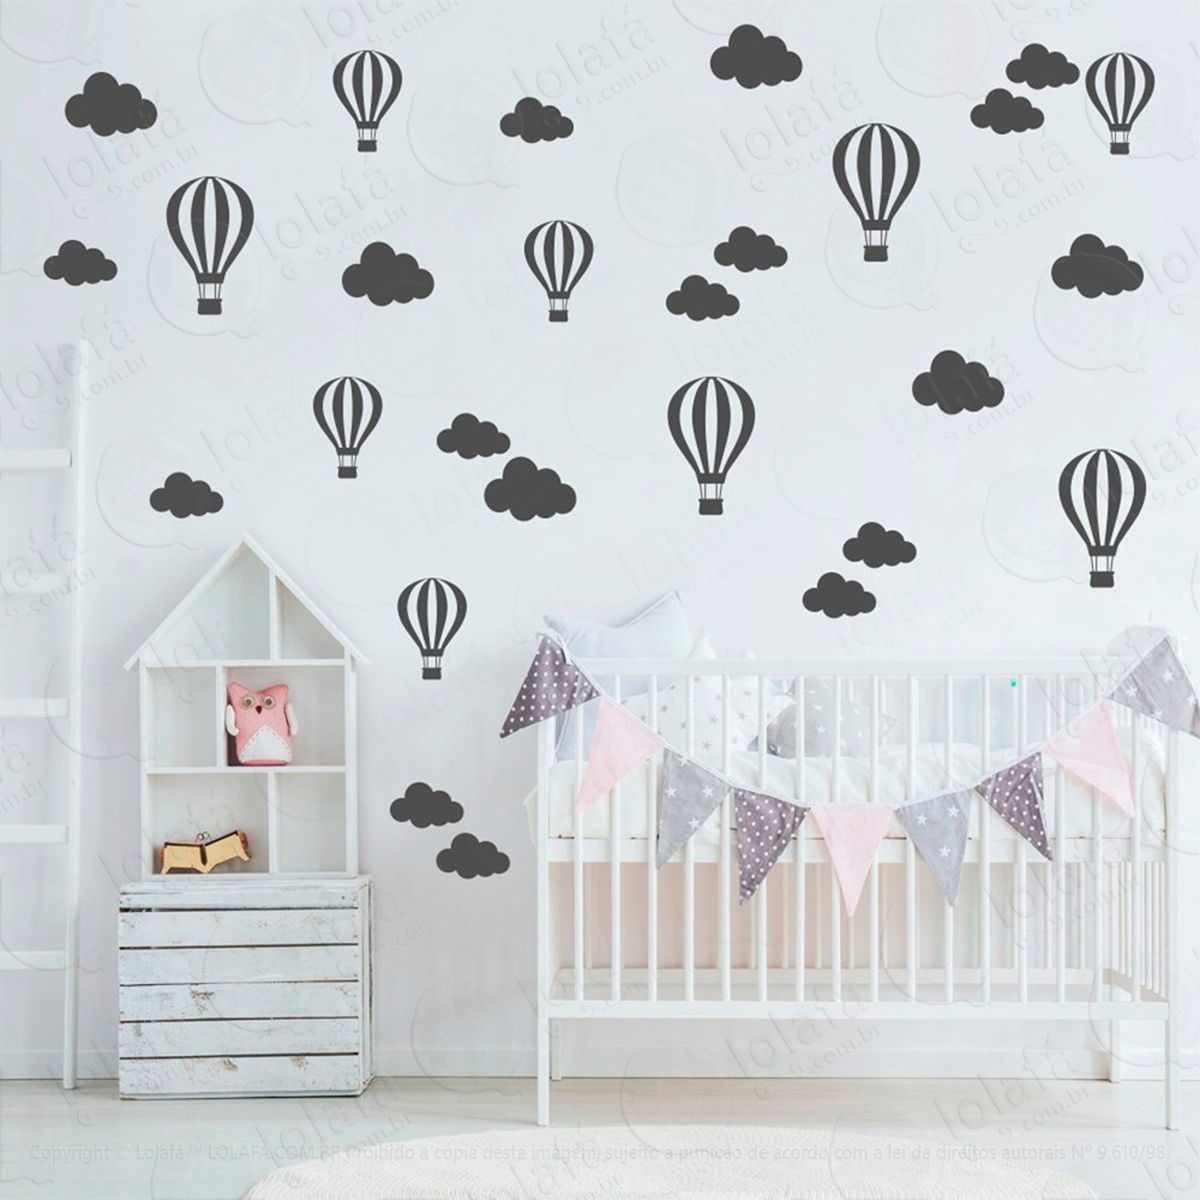 adesivos nuvens e balões 50 peças adesivos para quarto de bebê infantil - mod:835